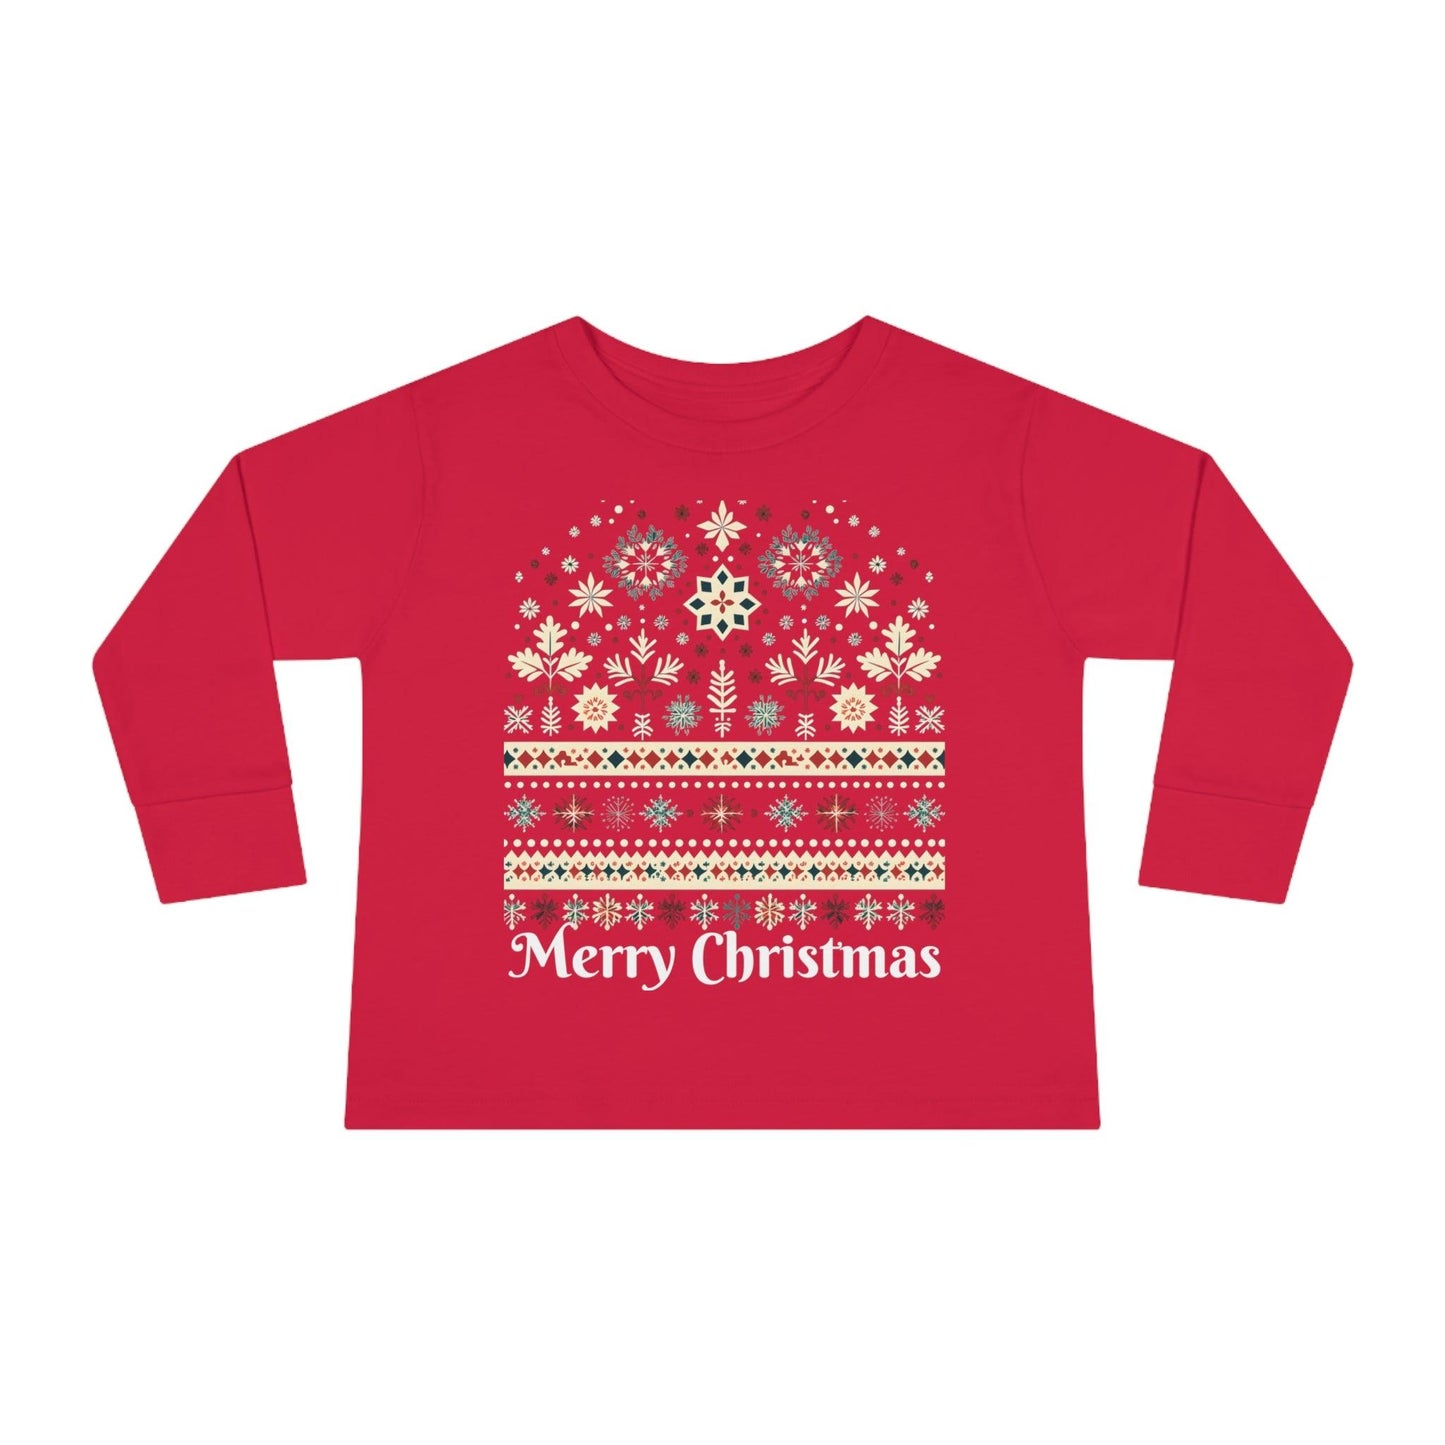 Kids Christmas Shirt Long Sleeve for Kids Christmas Outfit for Kids Christmas Design - Giftsmojo